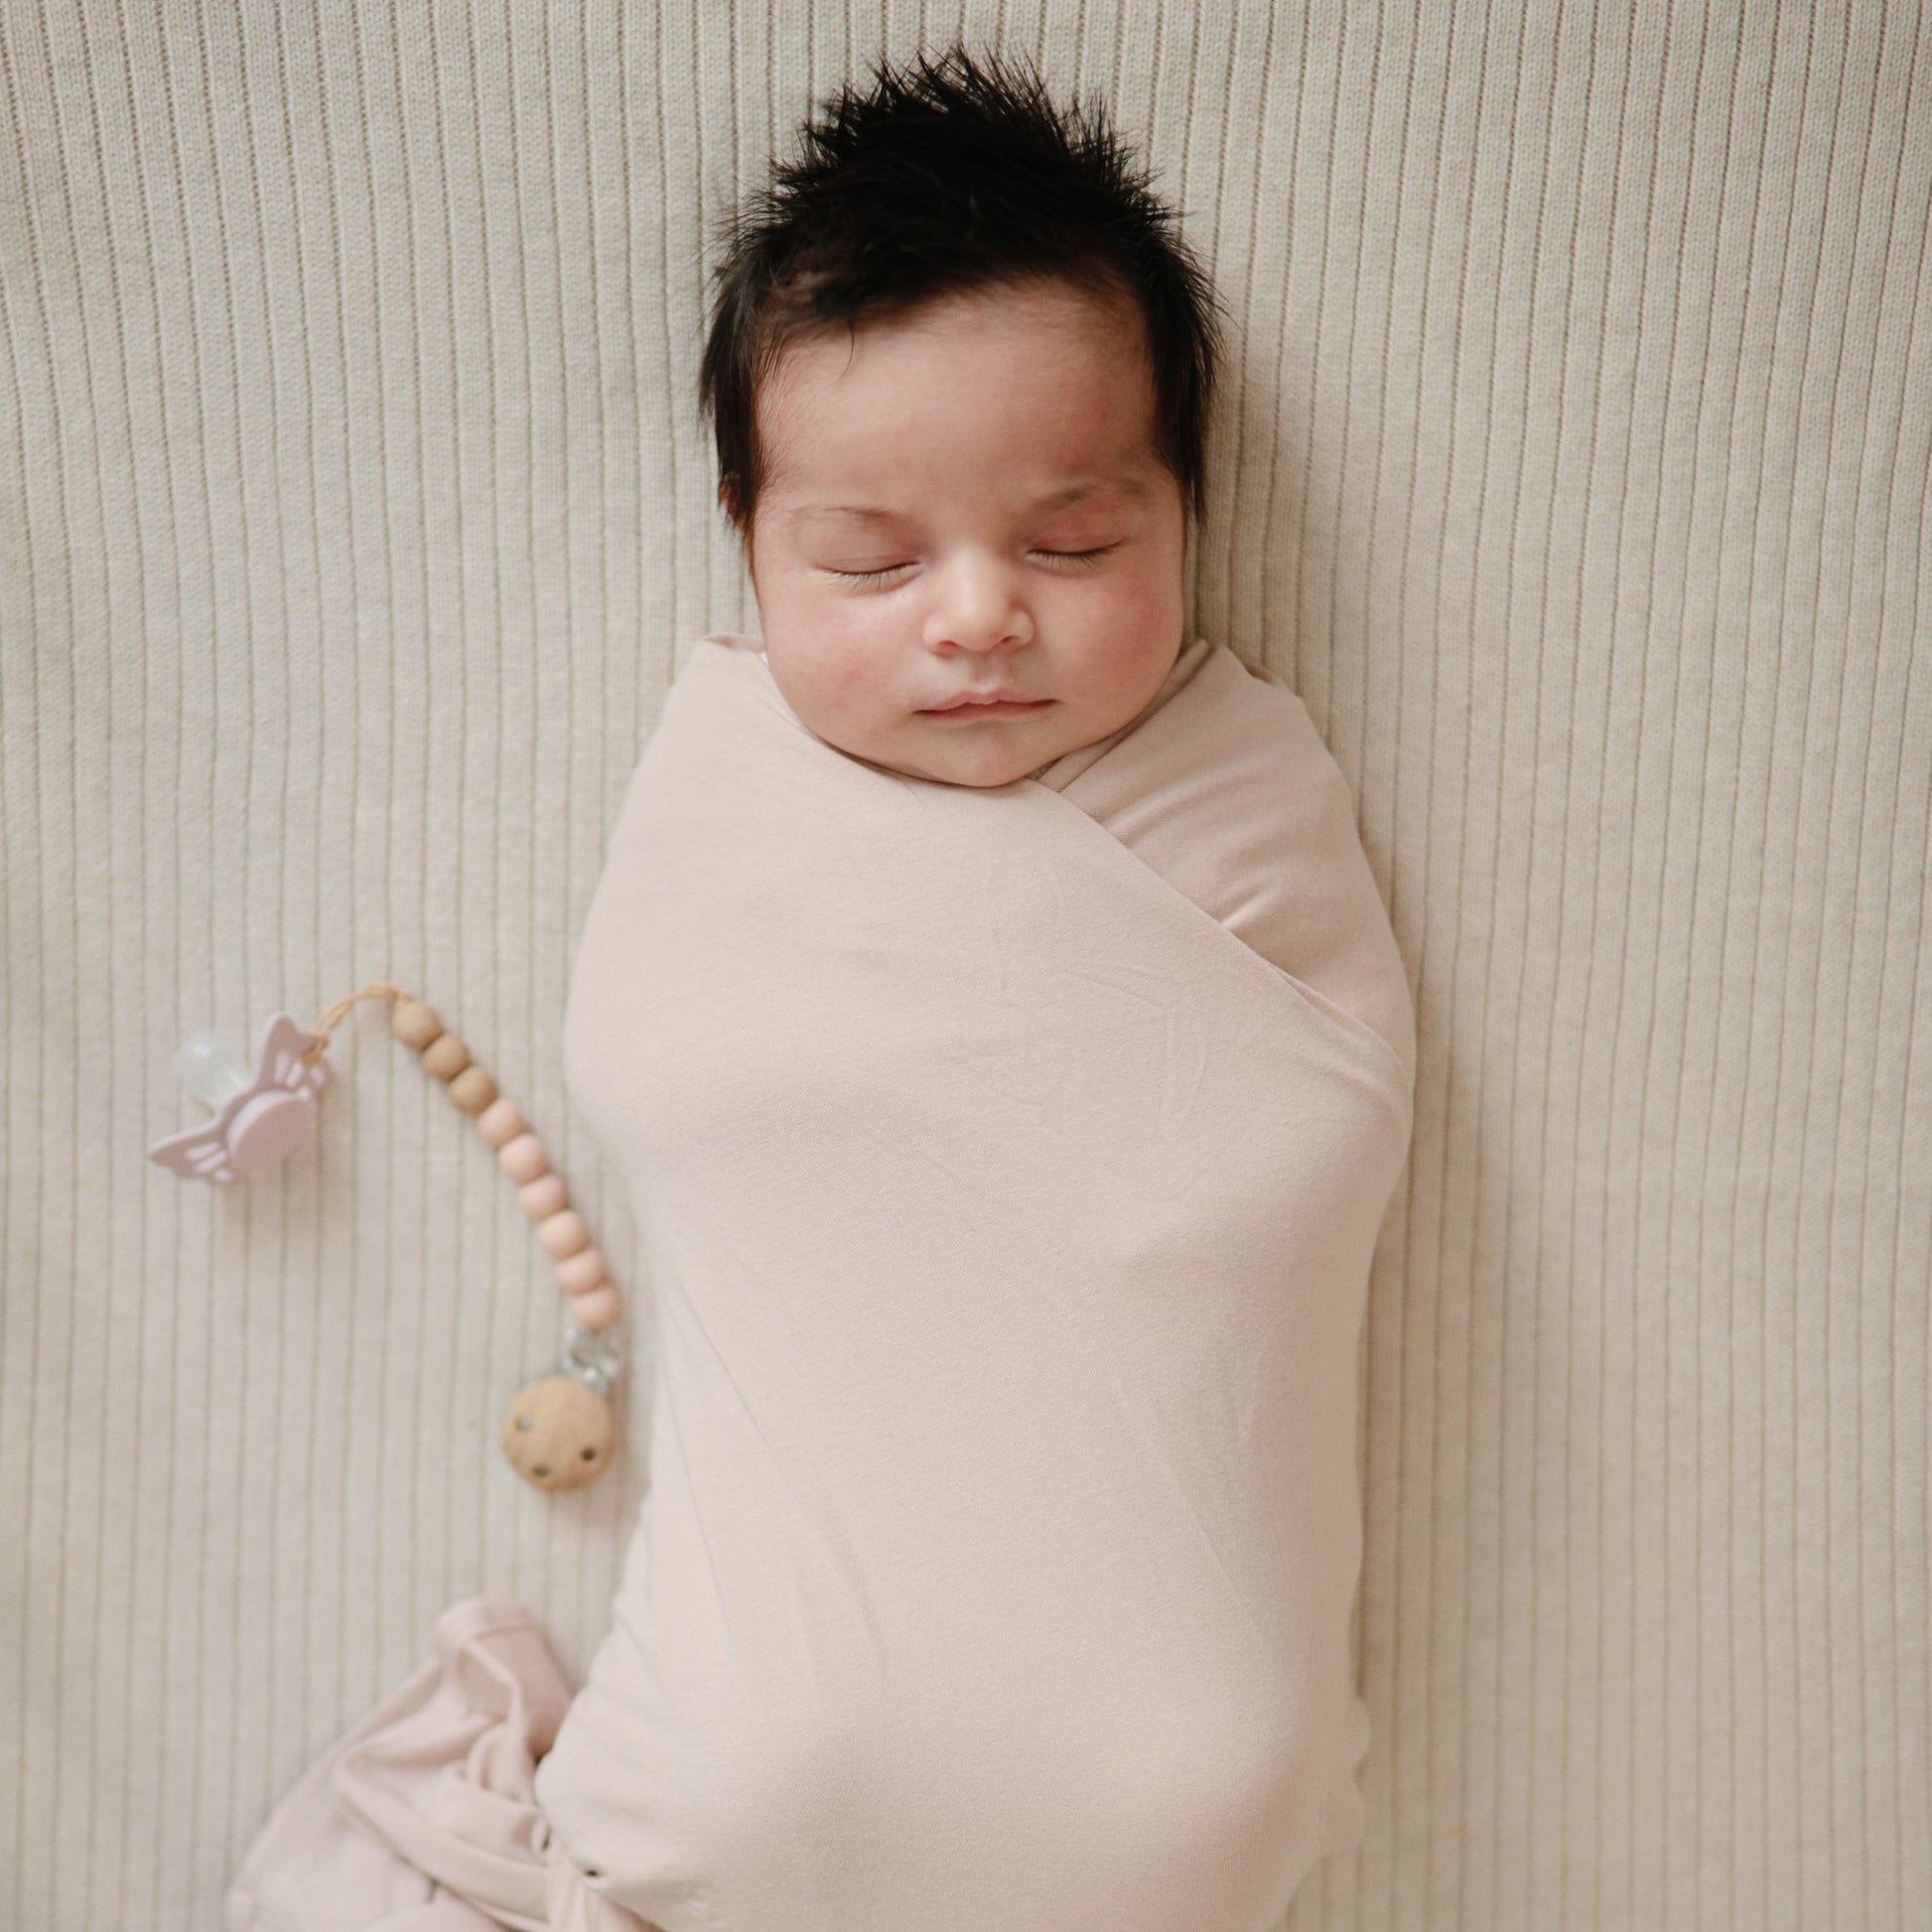 Mushie Knitted Baby Blanket Ribbed Beige Melange - Laadlee